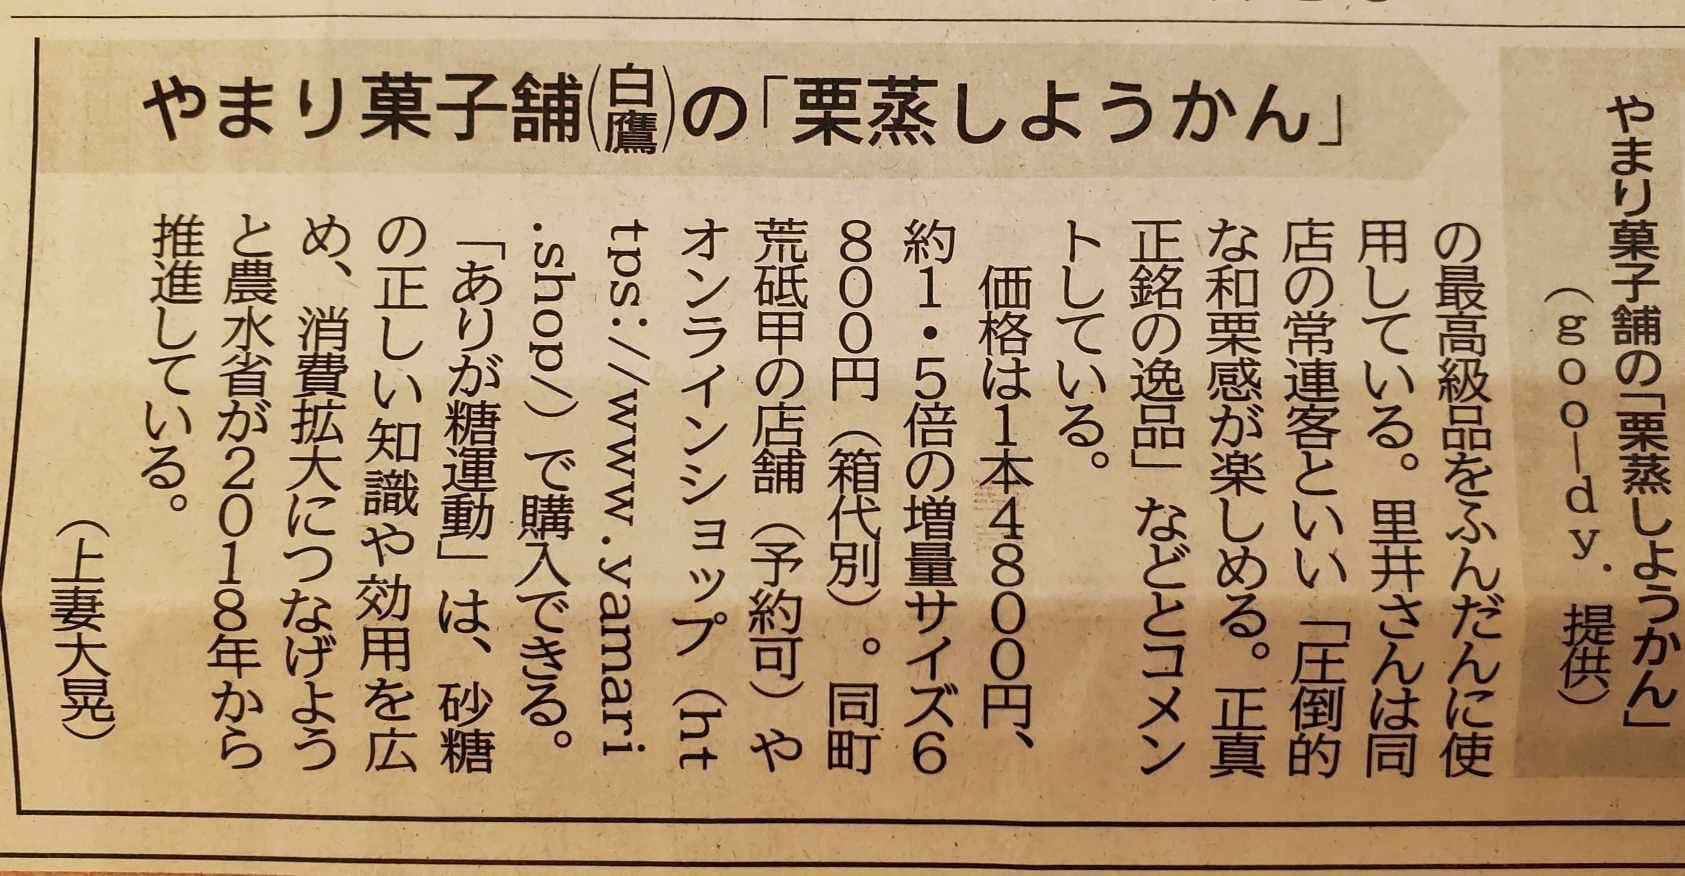 山形新聞 いいモノ.com 株式会社goo-dy.掲載-2